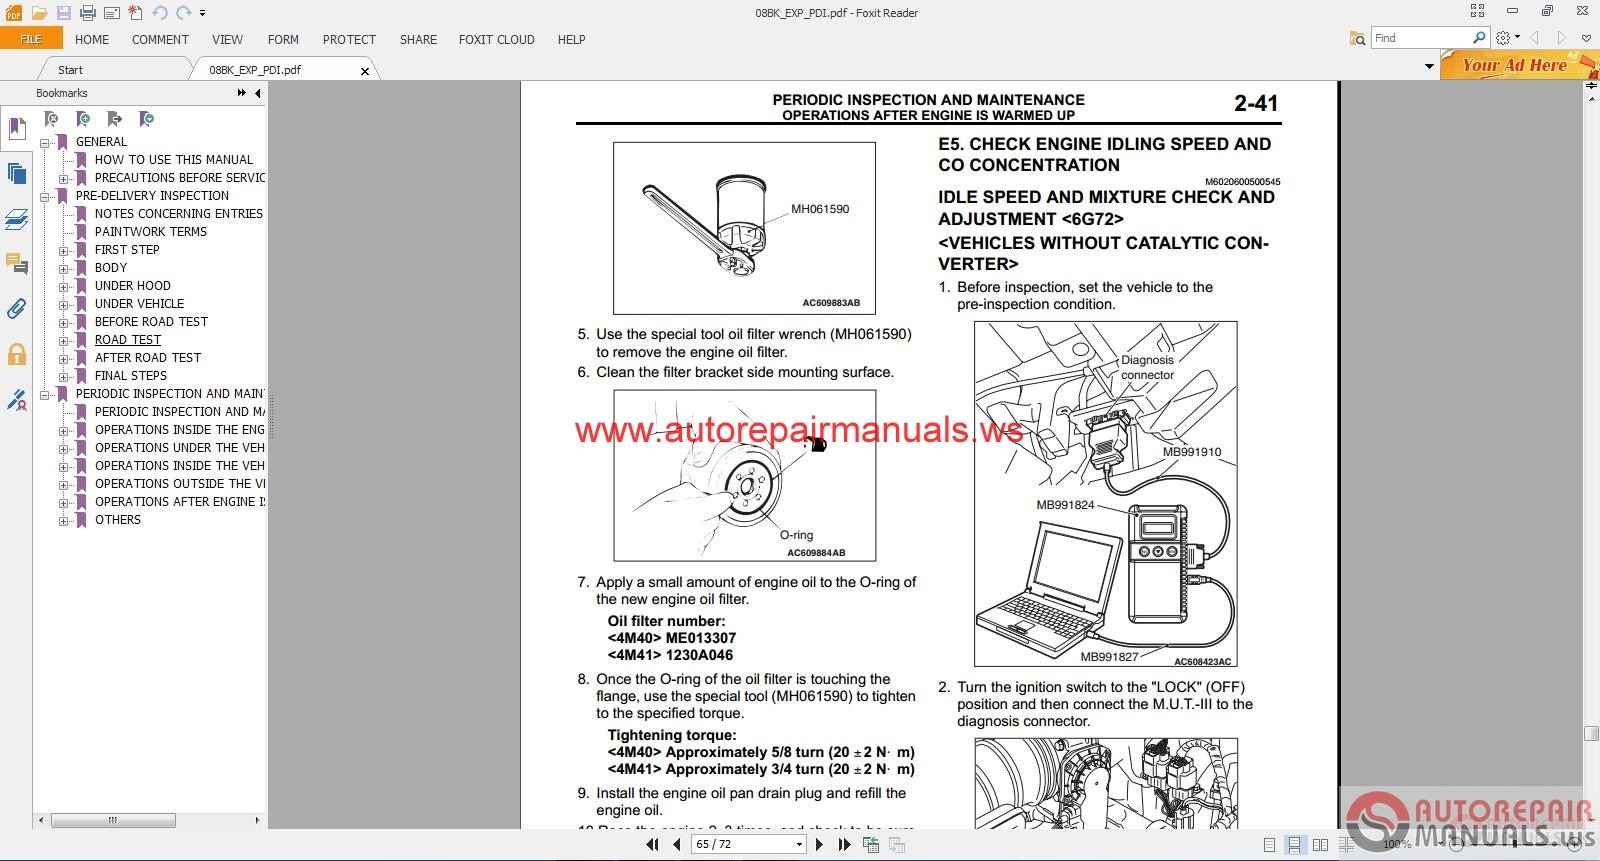 2016 Mitsubishi Lancer Maintenance Manual